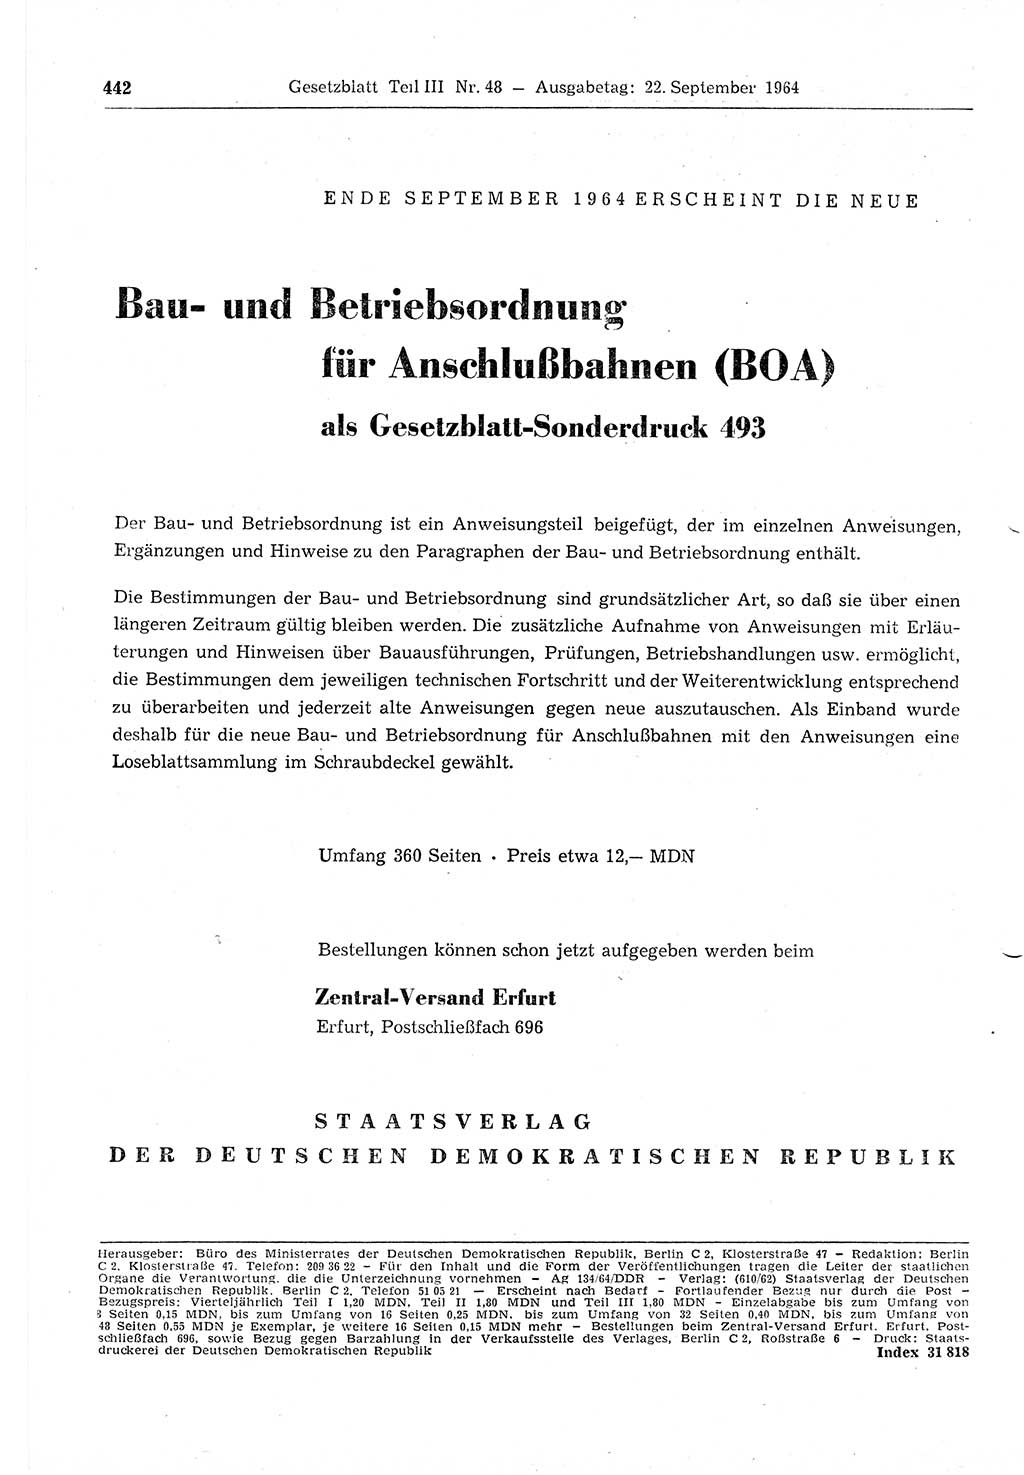 Gesetzblatt (GBl.) der Deutschen Demokratischen Republik (DDR) Teil ⅠⅠⅠ 1964, Seite 442 (GBl. DDR ⅠⅠⅠ 1964, S. 442)